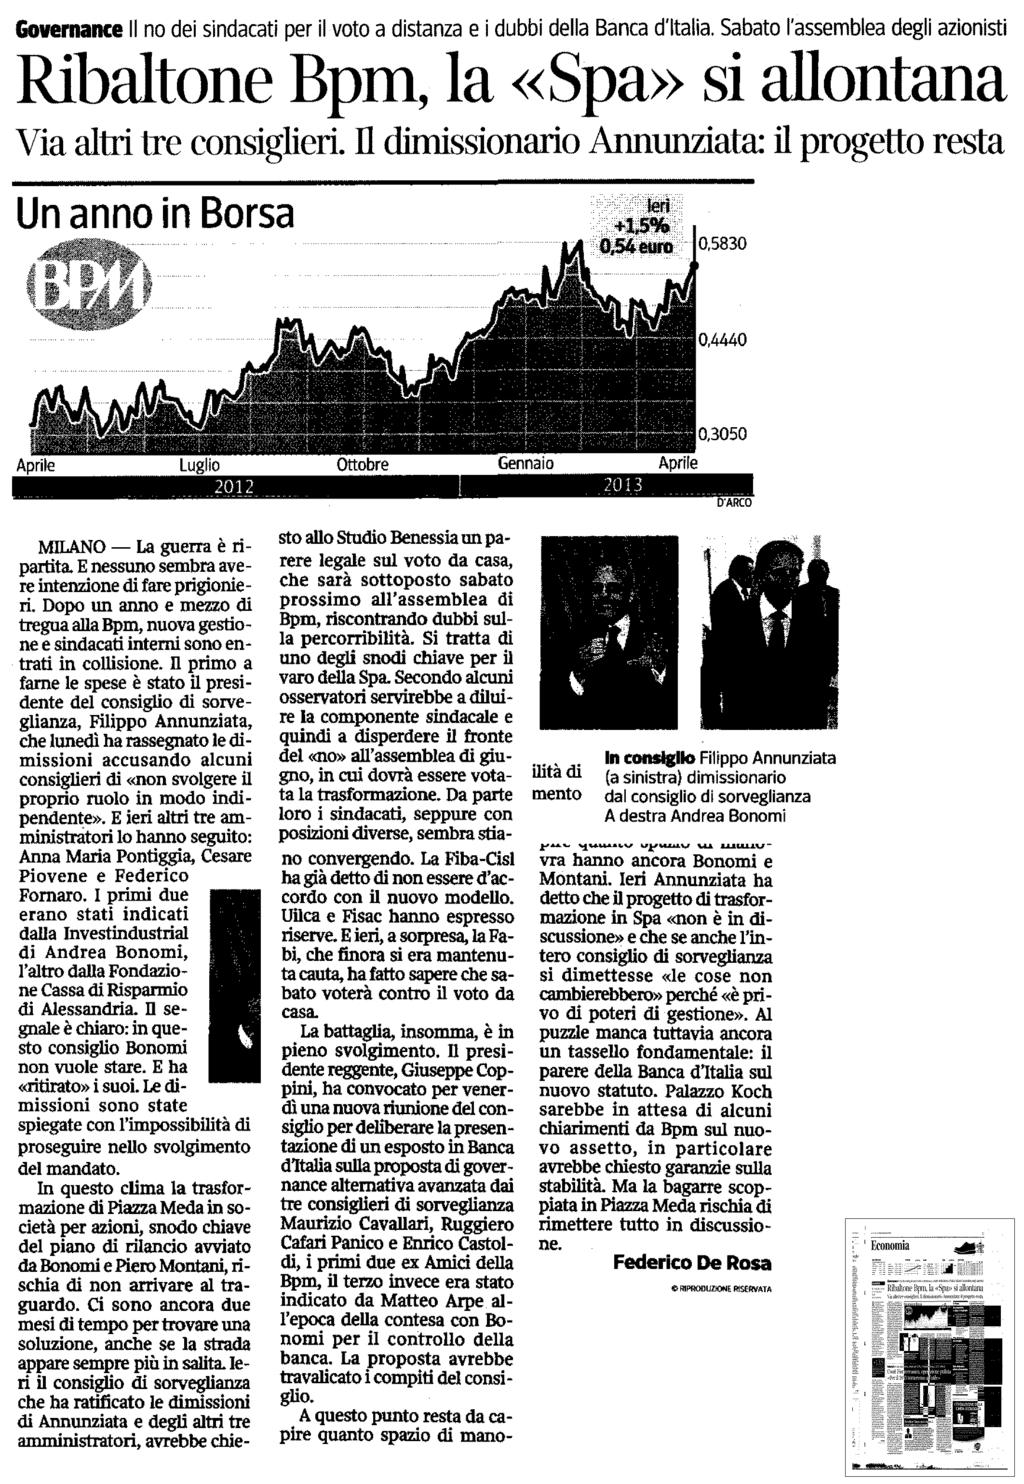 Estratto da pag. 27 Mercoledì 24/04/2013 Ferruccio de Bortoli 489.988 Governance II no dei sindacati per il voto a distanza e i dubbi della Banca d'italia.